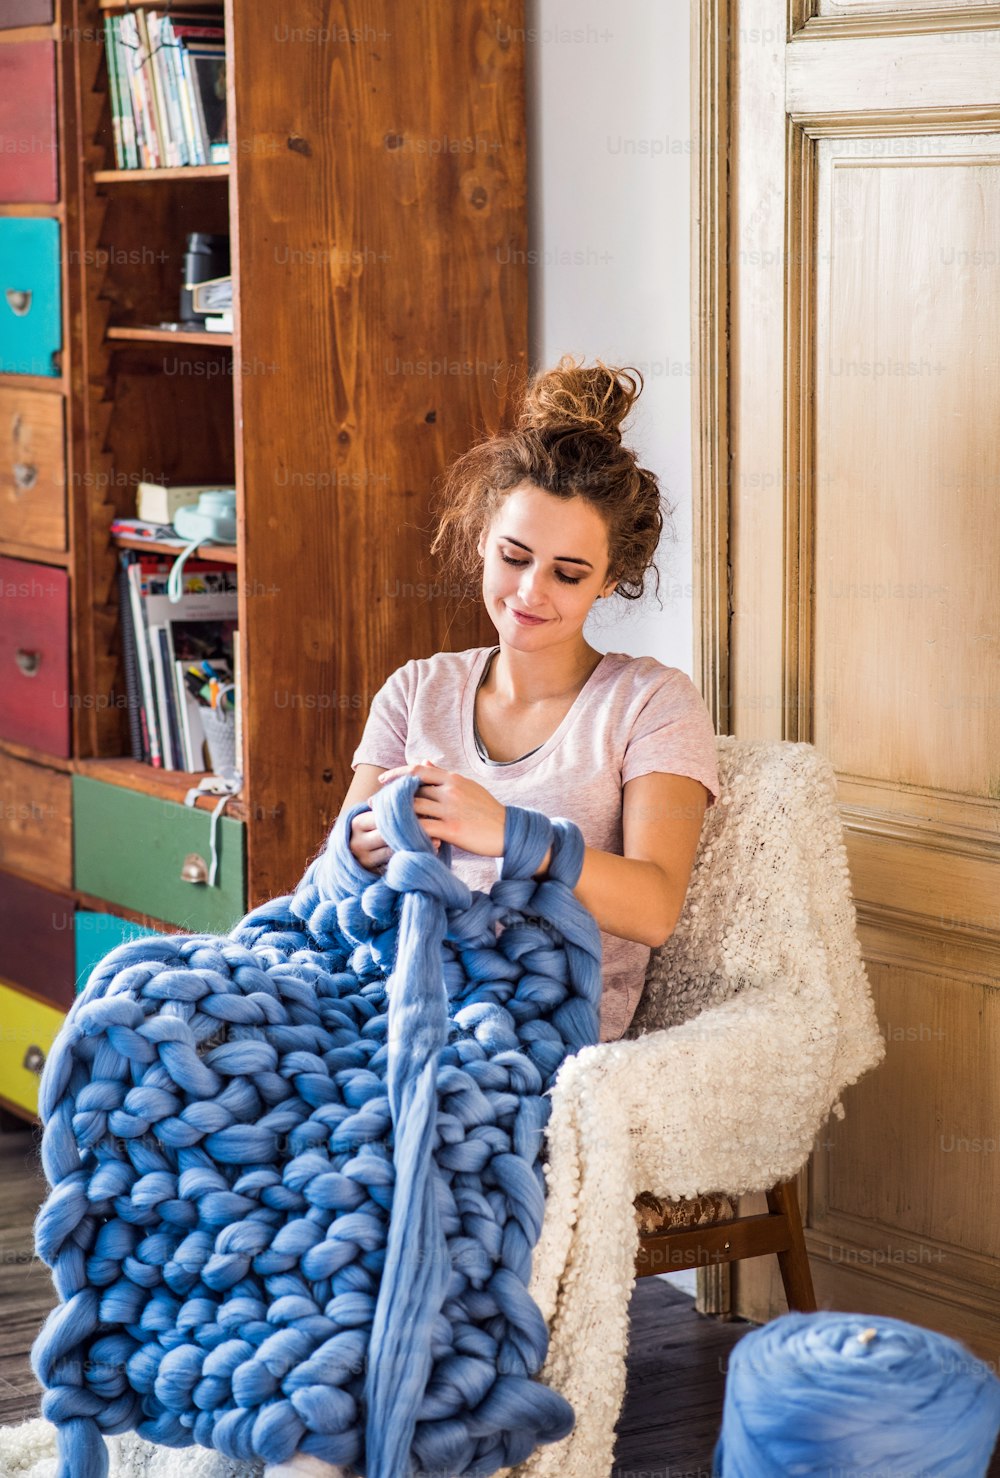 Kleines Gesch�äft einer jungen Frau. Junge Frau strickt eine Wolldecke von Hand.